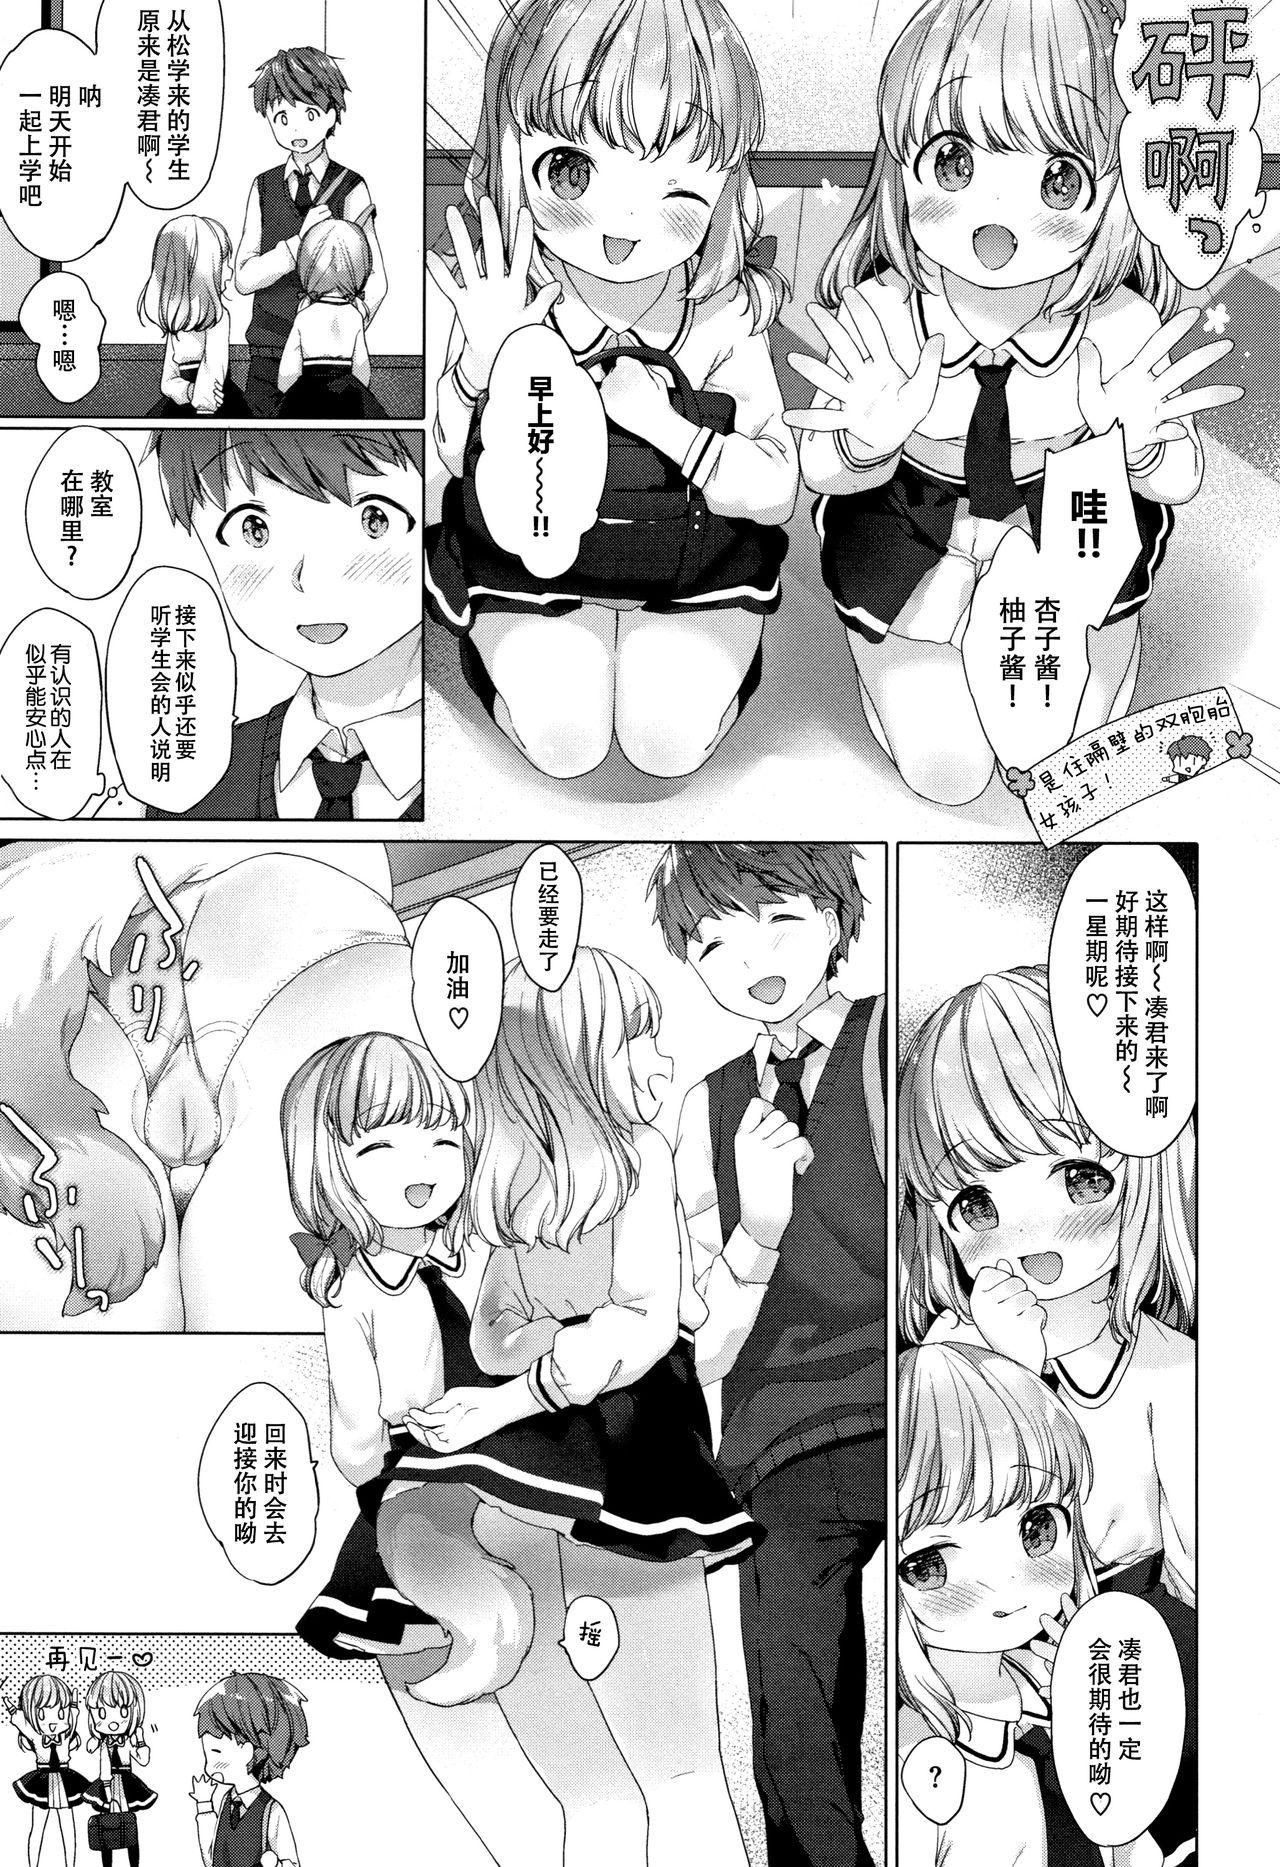 Hotfuck Koakuma wa Shoudoubutsu - Sweet devils as my pets. Domination - Page 12